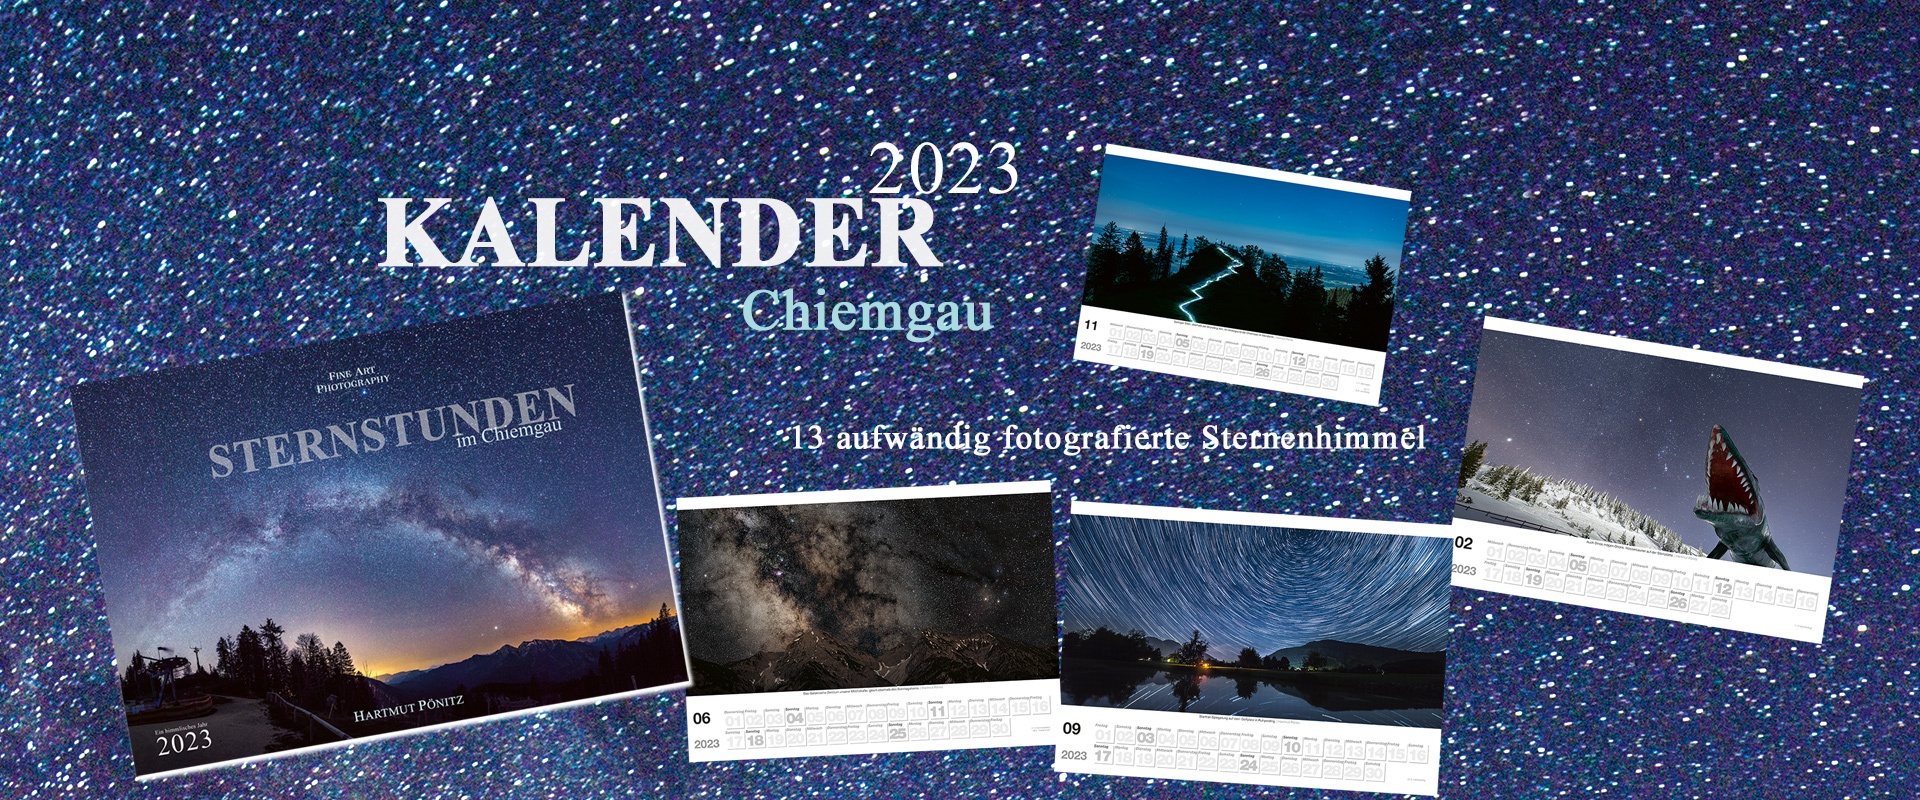 Kalender Sternstunden Chiemgau 2023